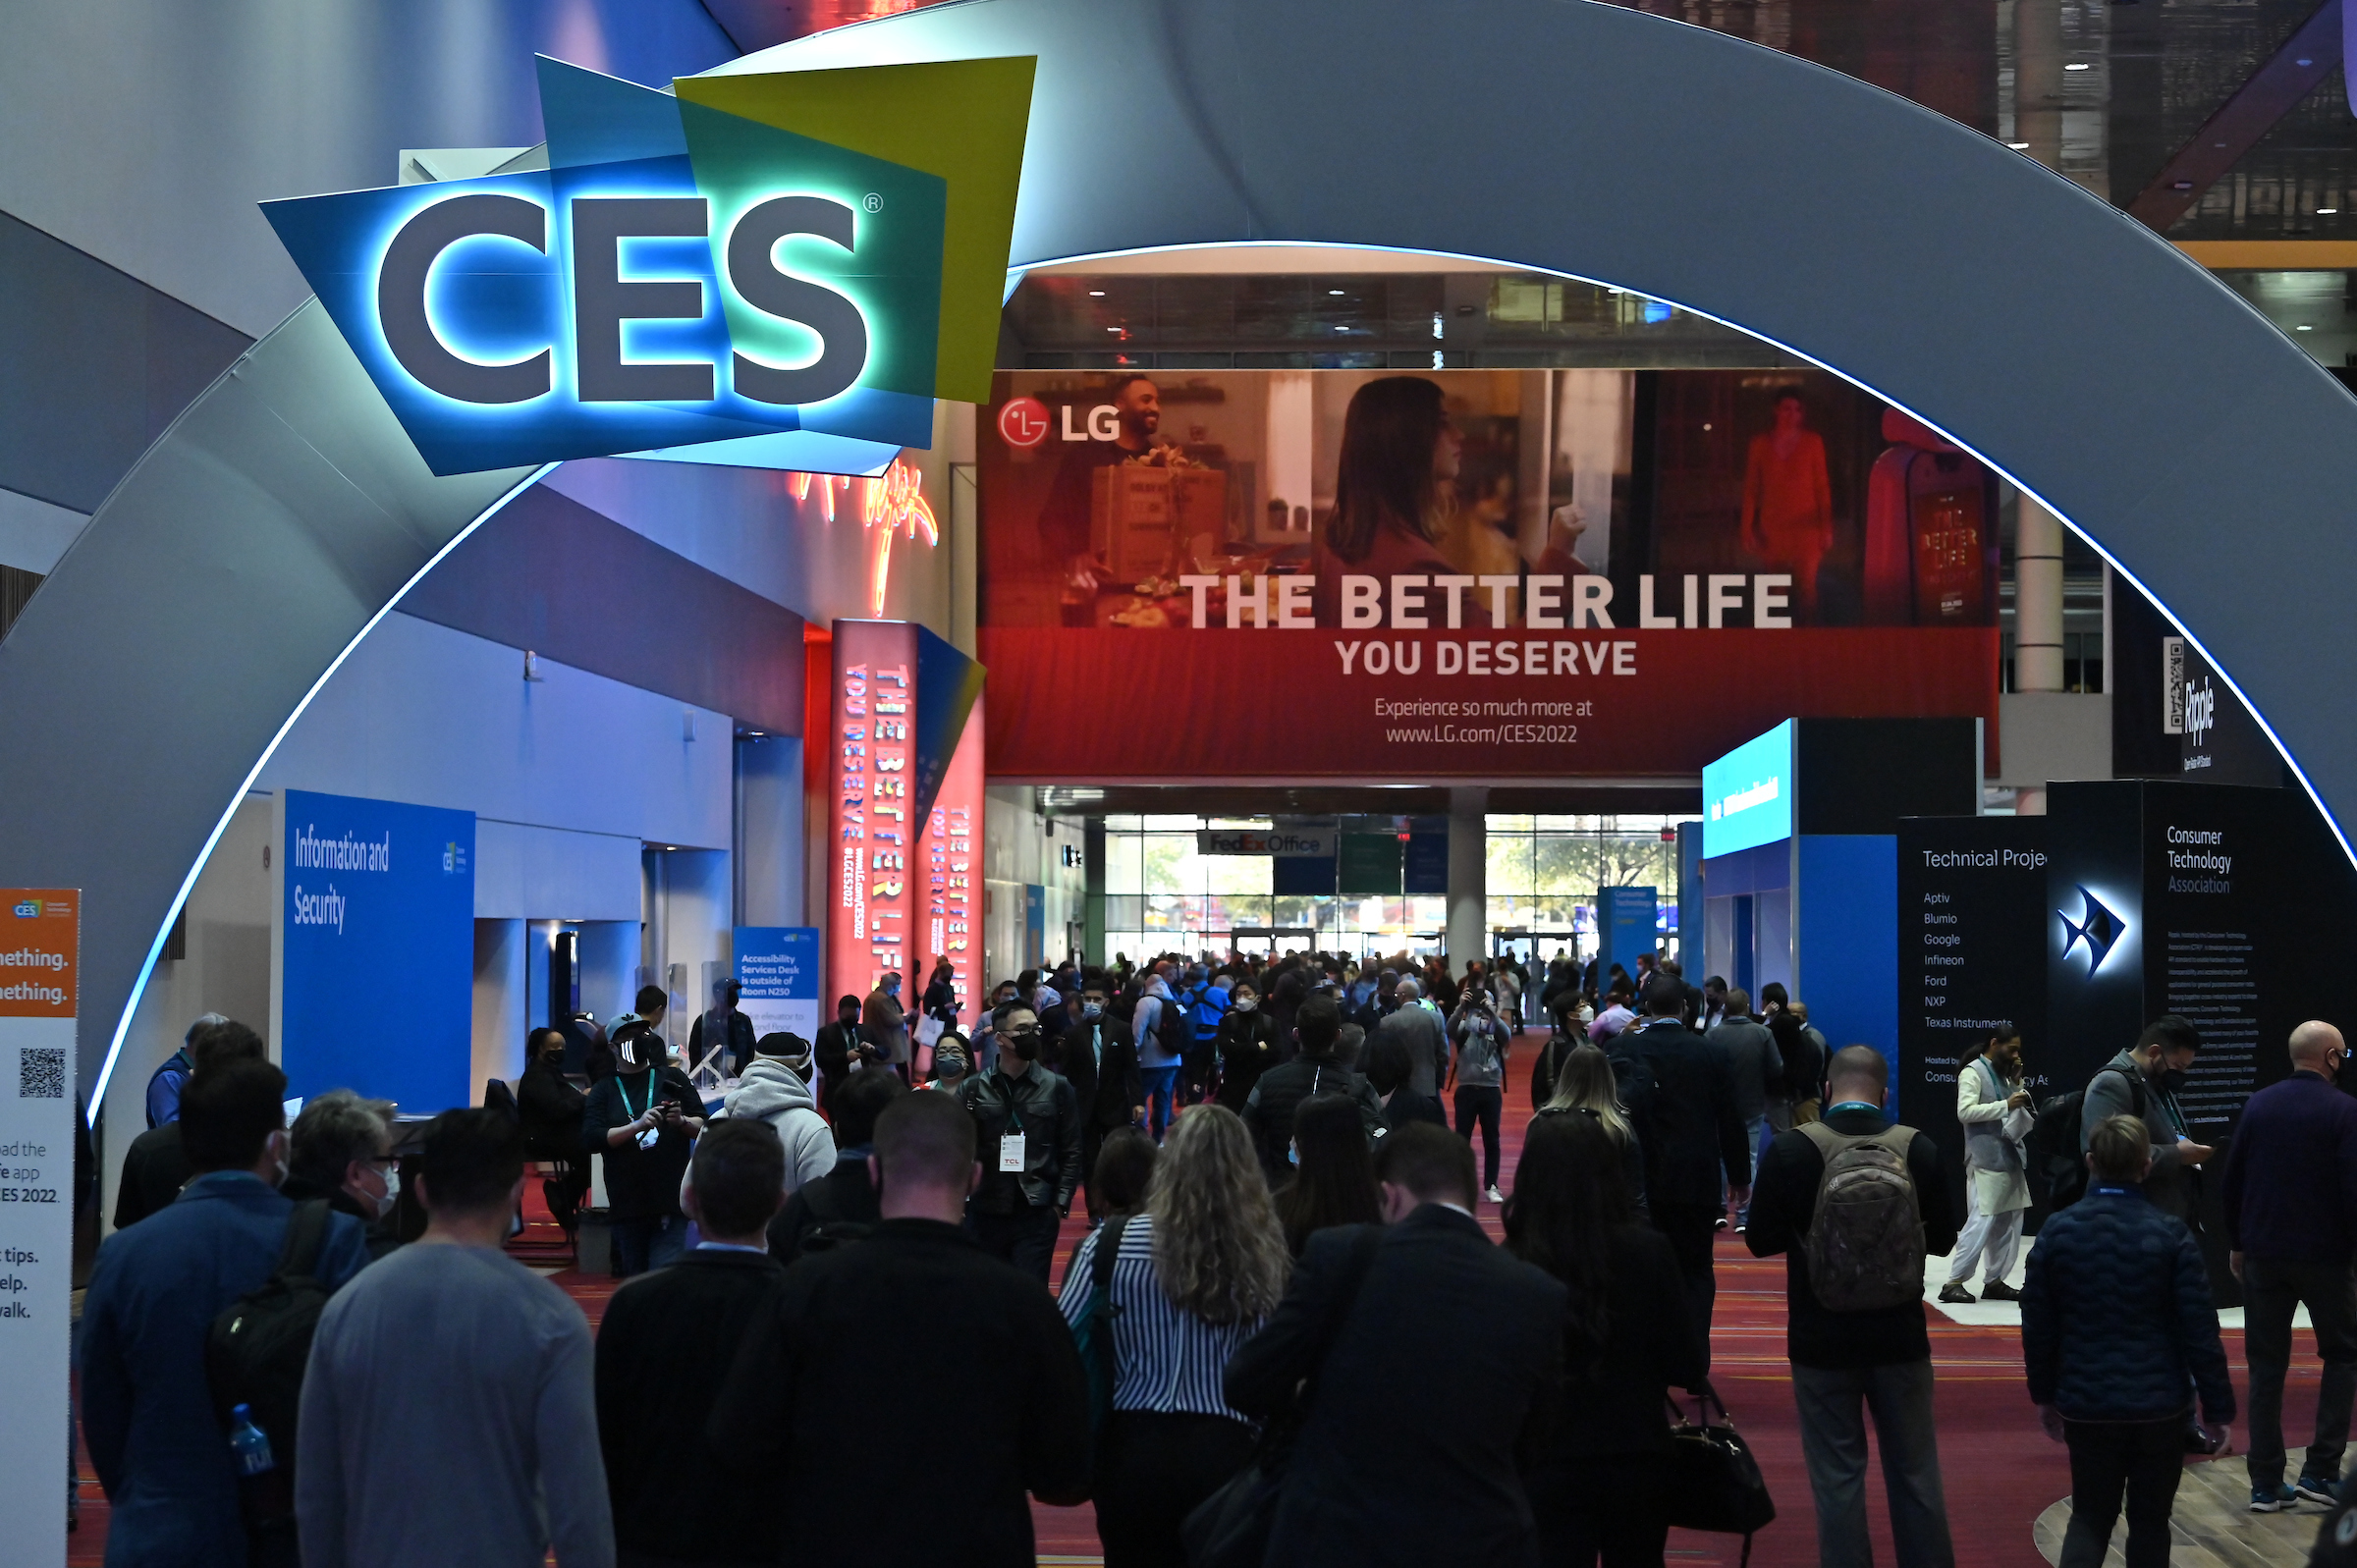 70 niederländische Start-ups und Scale-ups nehmen an der digitalen Technologiemesse CES in Las Vegas teil